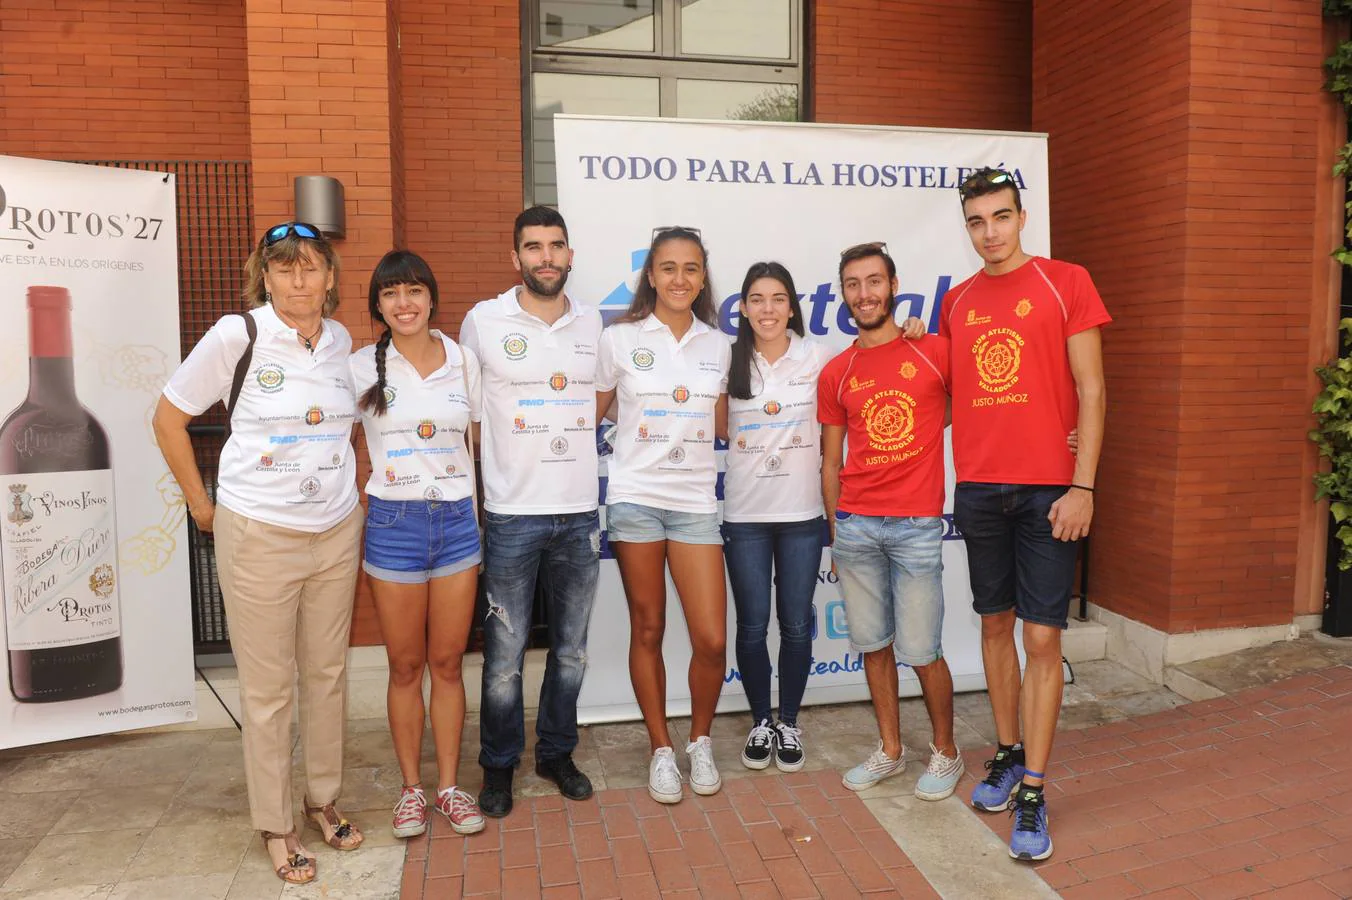 El Club Atletismo Valladolid. Ana Pérez, Mónica Mendoza, Alexander Cuevas, Ainara Zarandona, Lucía Herrero, Guillermo Martín y Álvaro Vela.